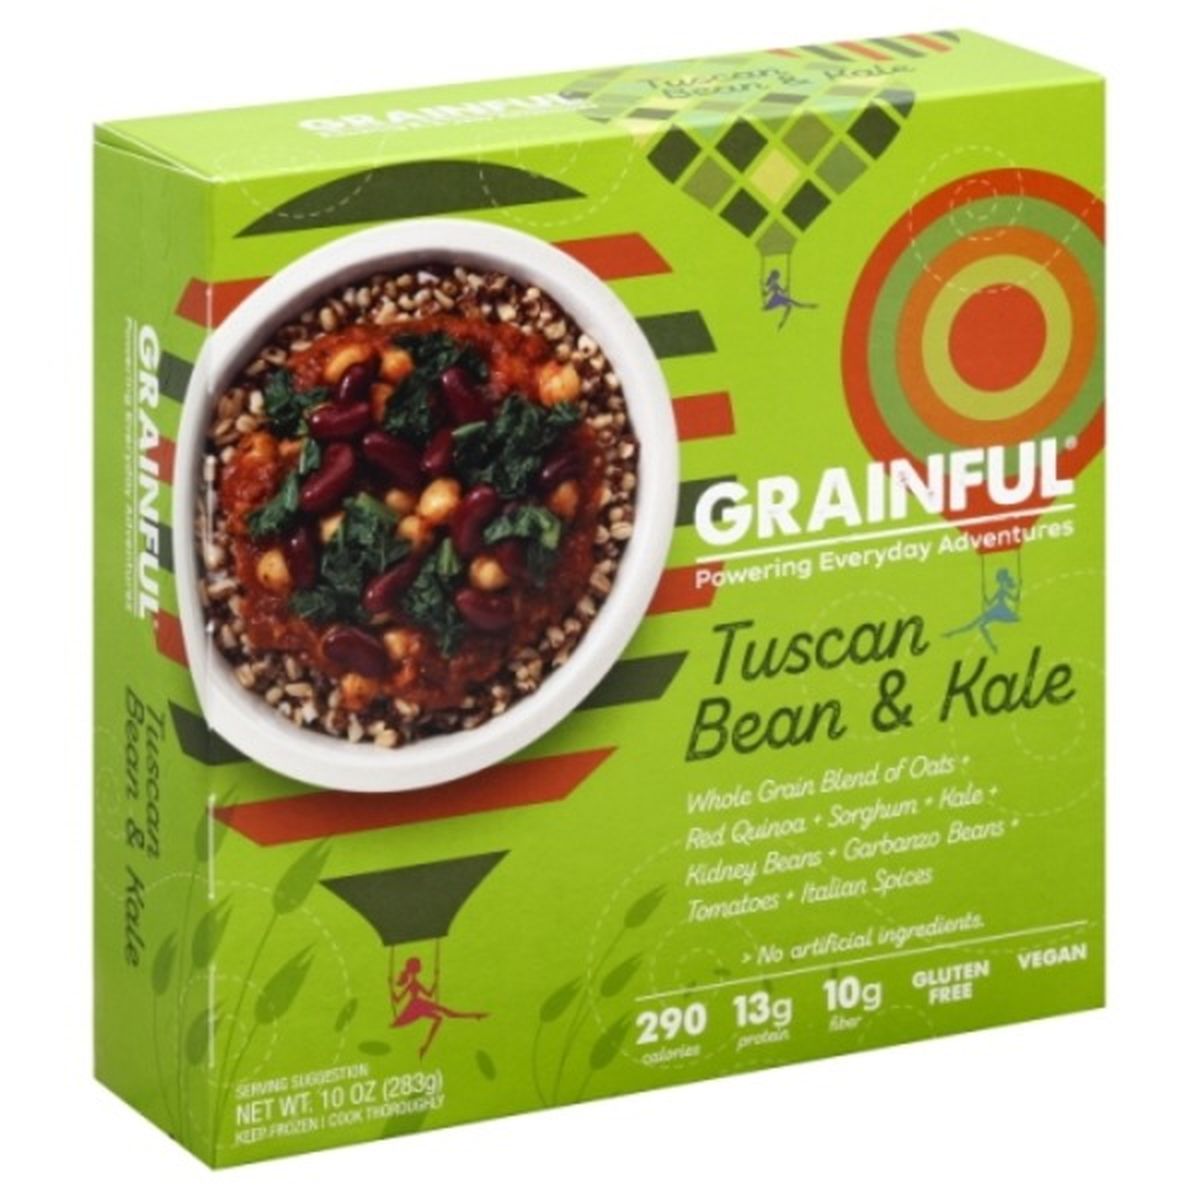 Calories in Grainful Tuscan Bean & Kale